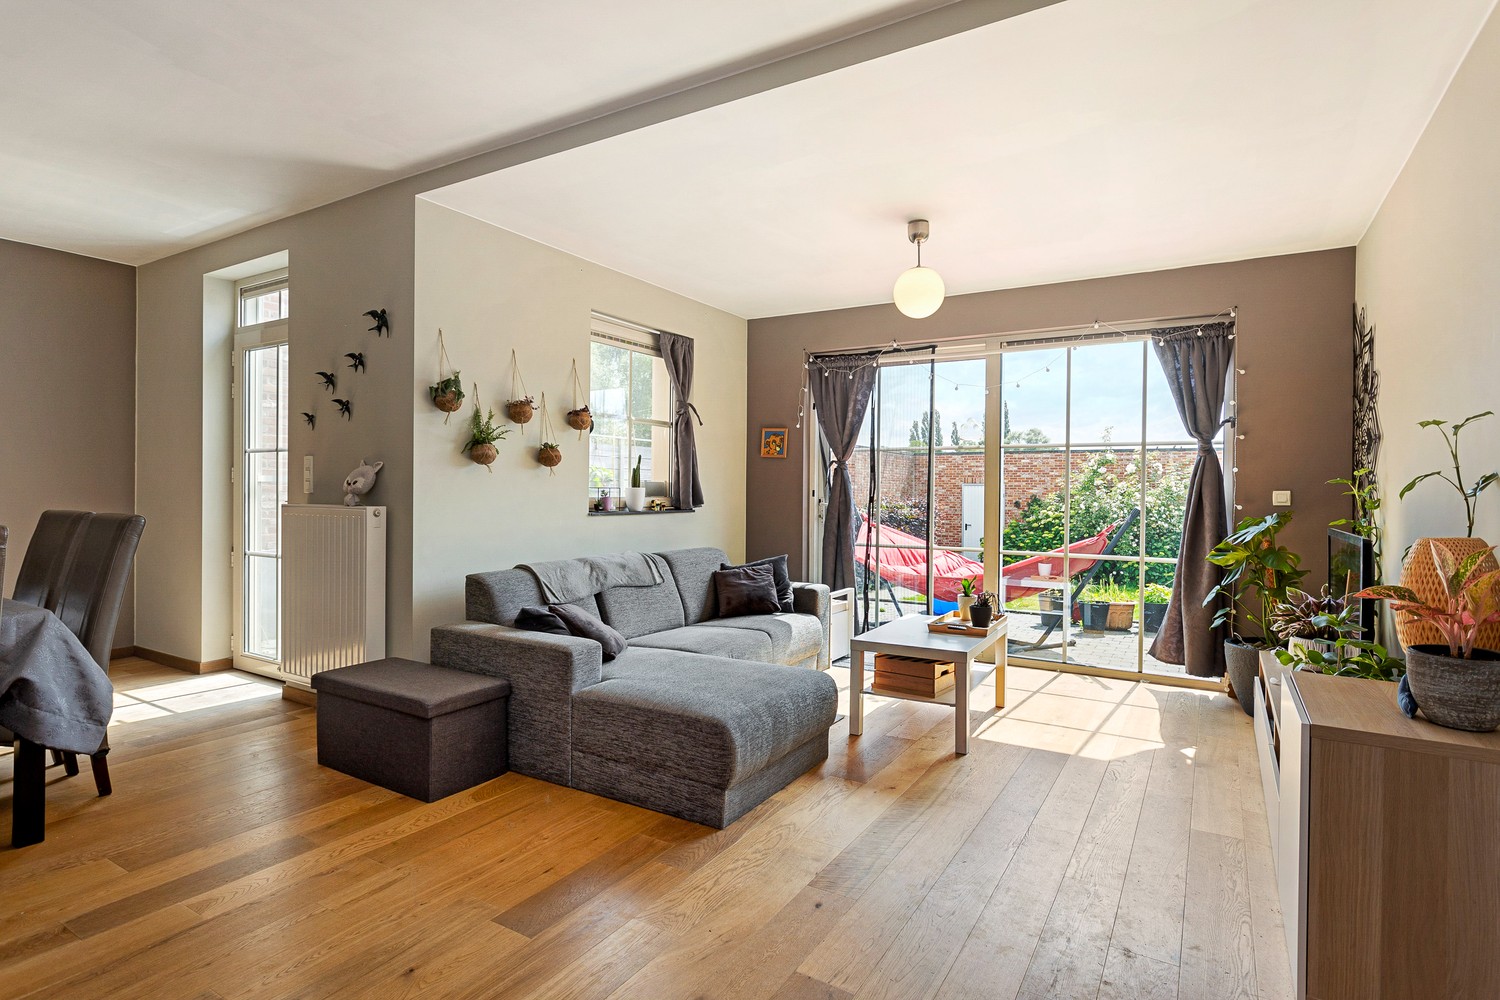 Zeer mooi gelijkvloers appartement met zonnige tuin, 2 slaapkamers & garage in Grobbendonk! afbeelding 1